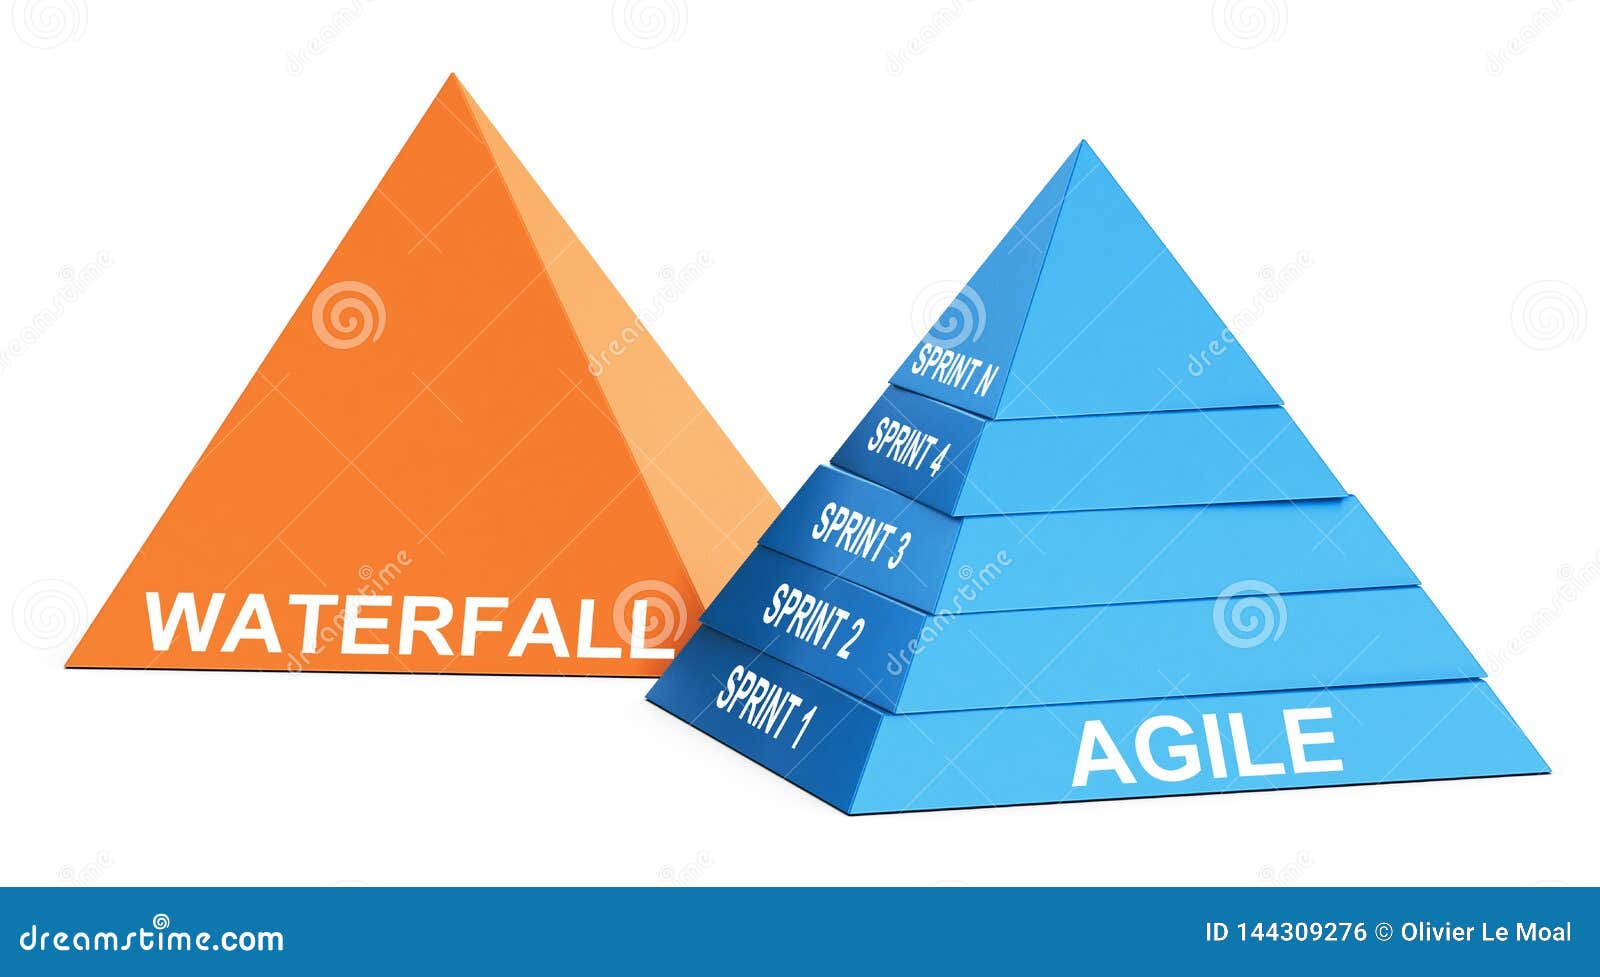 agile methodology versus waterfall